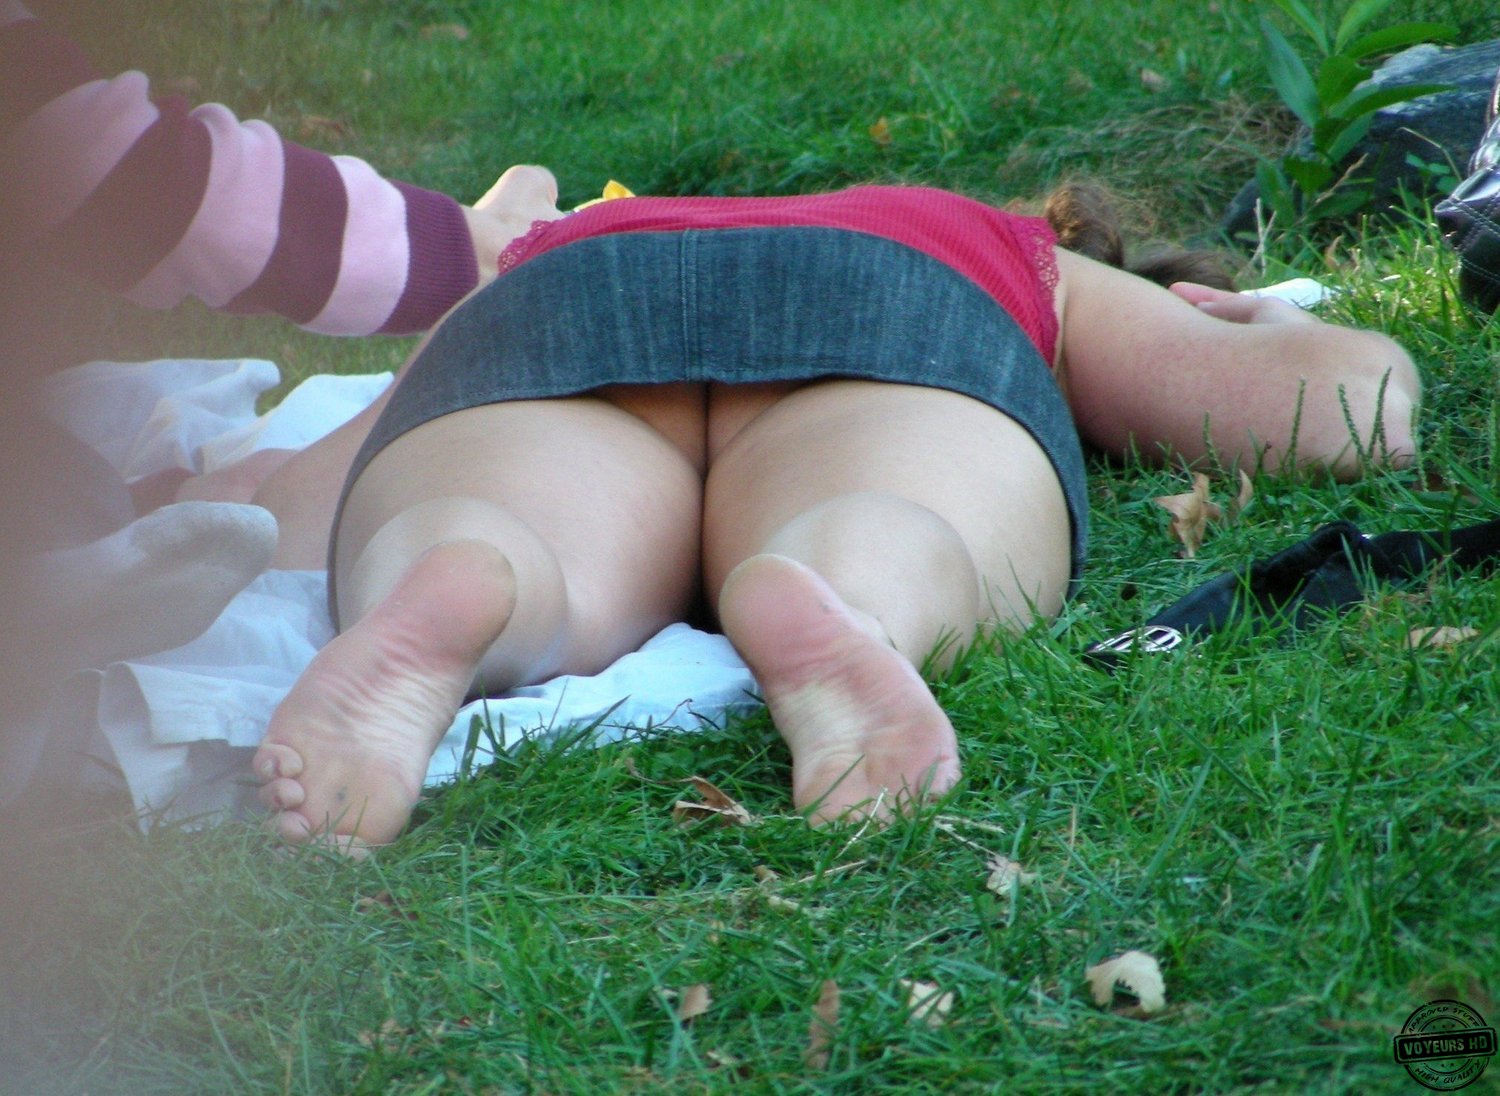 Voyeur Sleeping - Sleeping in the Park - Voyeur Videos